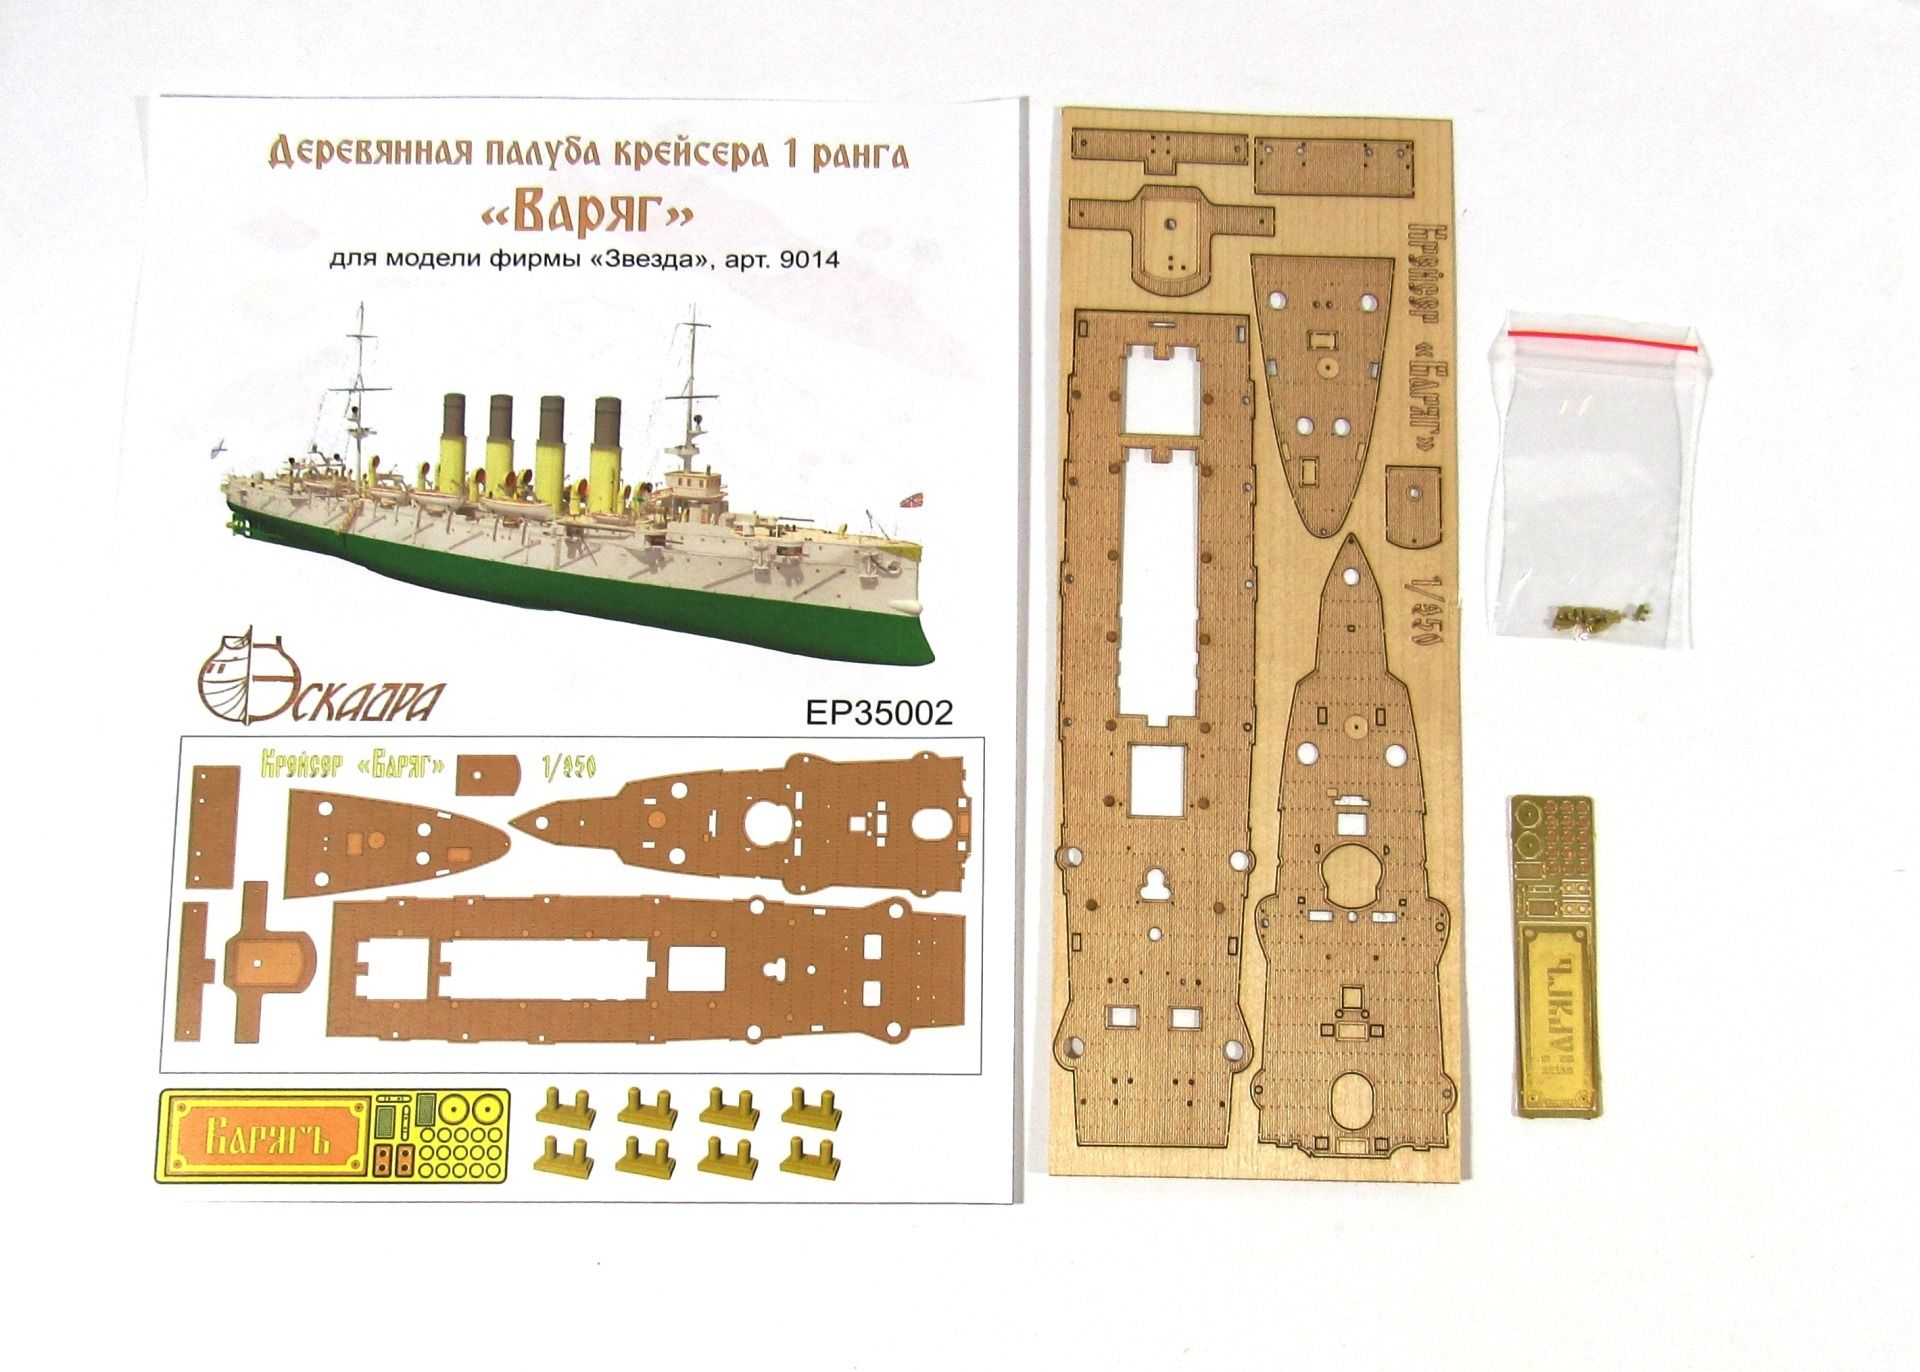 Deck of the cruiser "Varangian" - imodeller.store